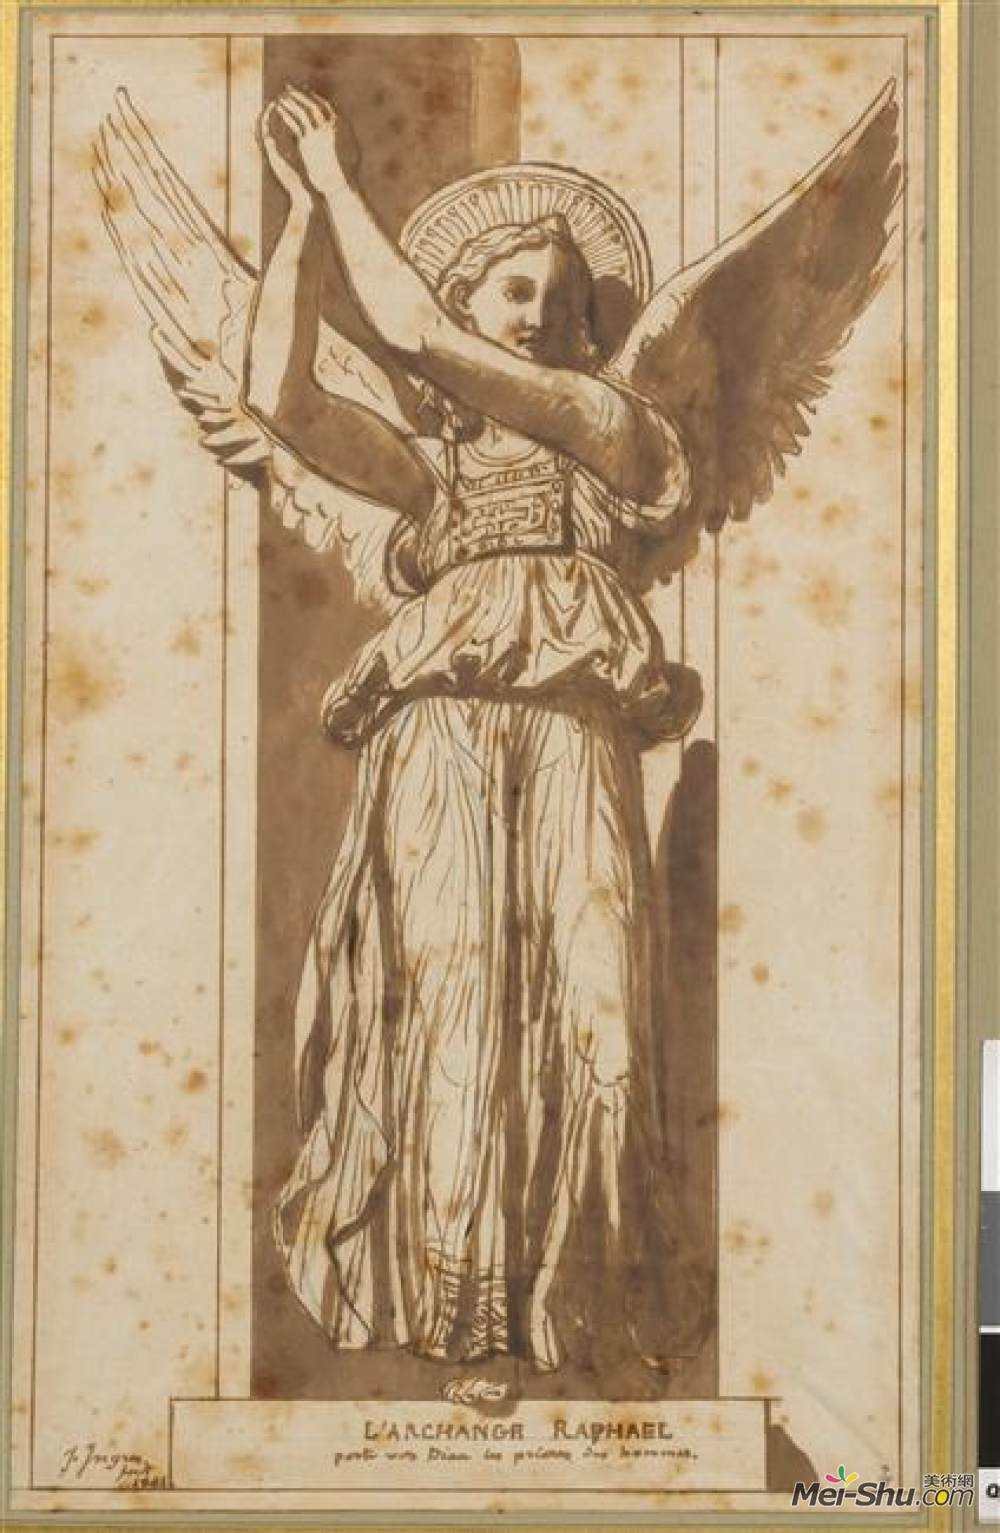 大天使拉斐尔是上帝对人类的祈祷让奥古斯特多米尼克安格尔jean